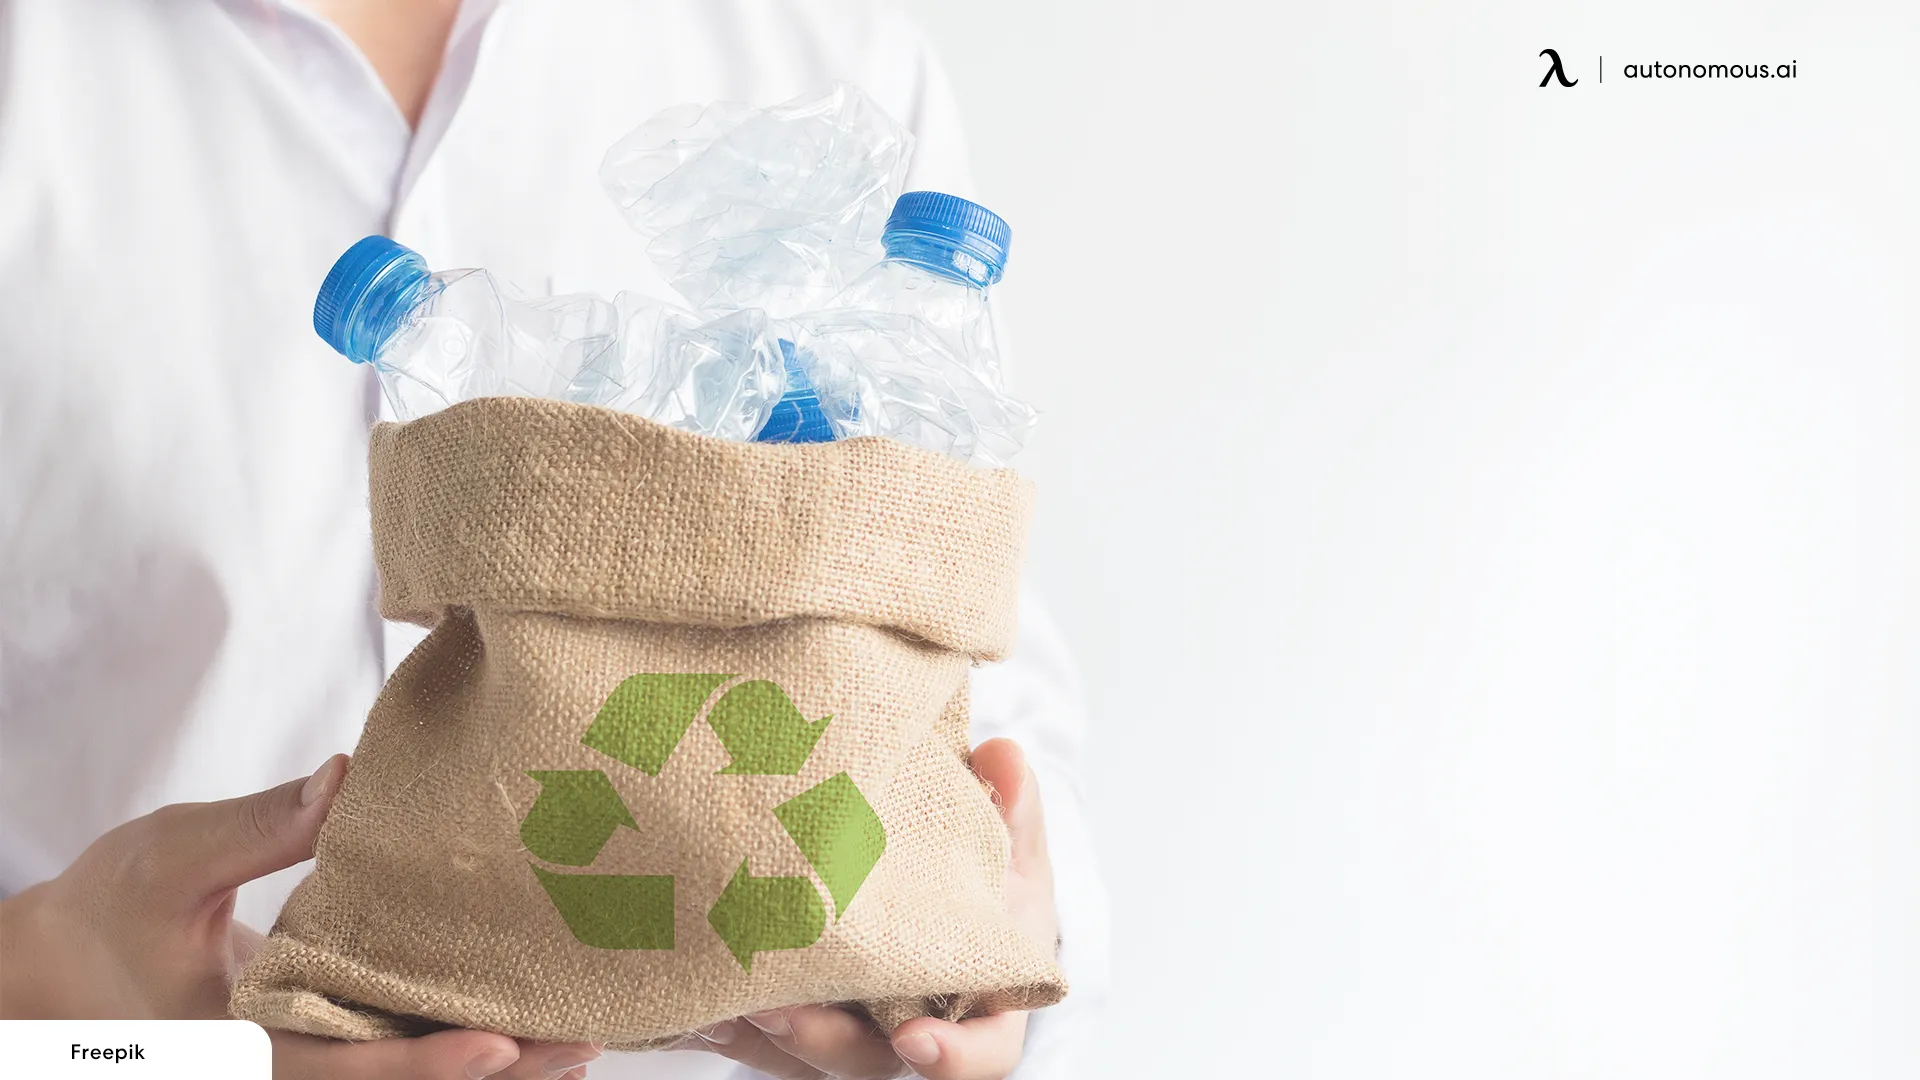 Add Organic Waste Bins to Lunchroom